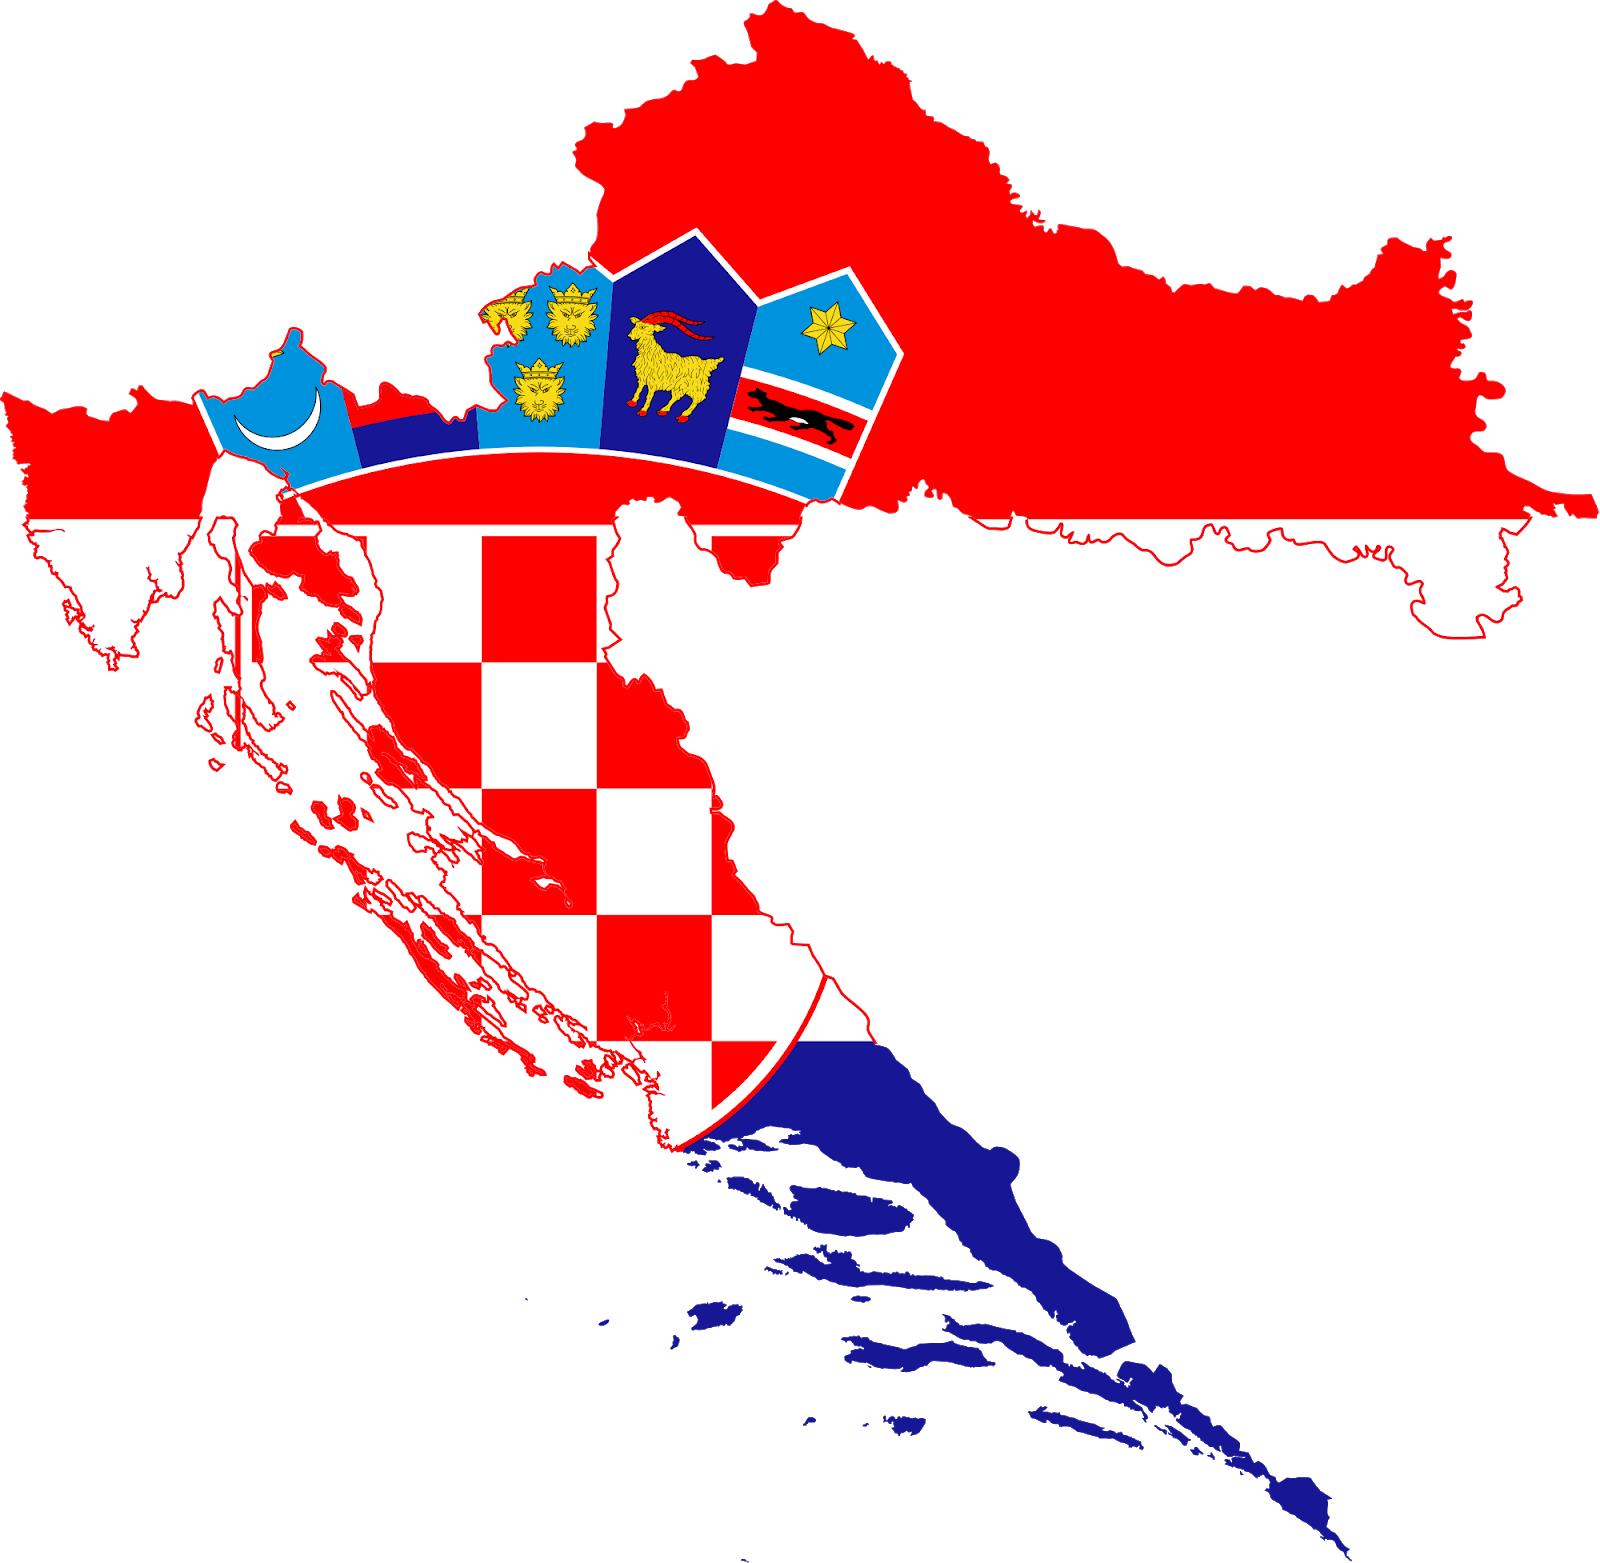 Croatia, Zagreb - Partner